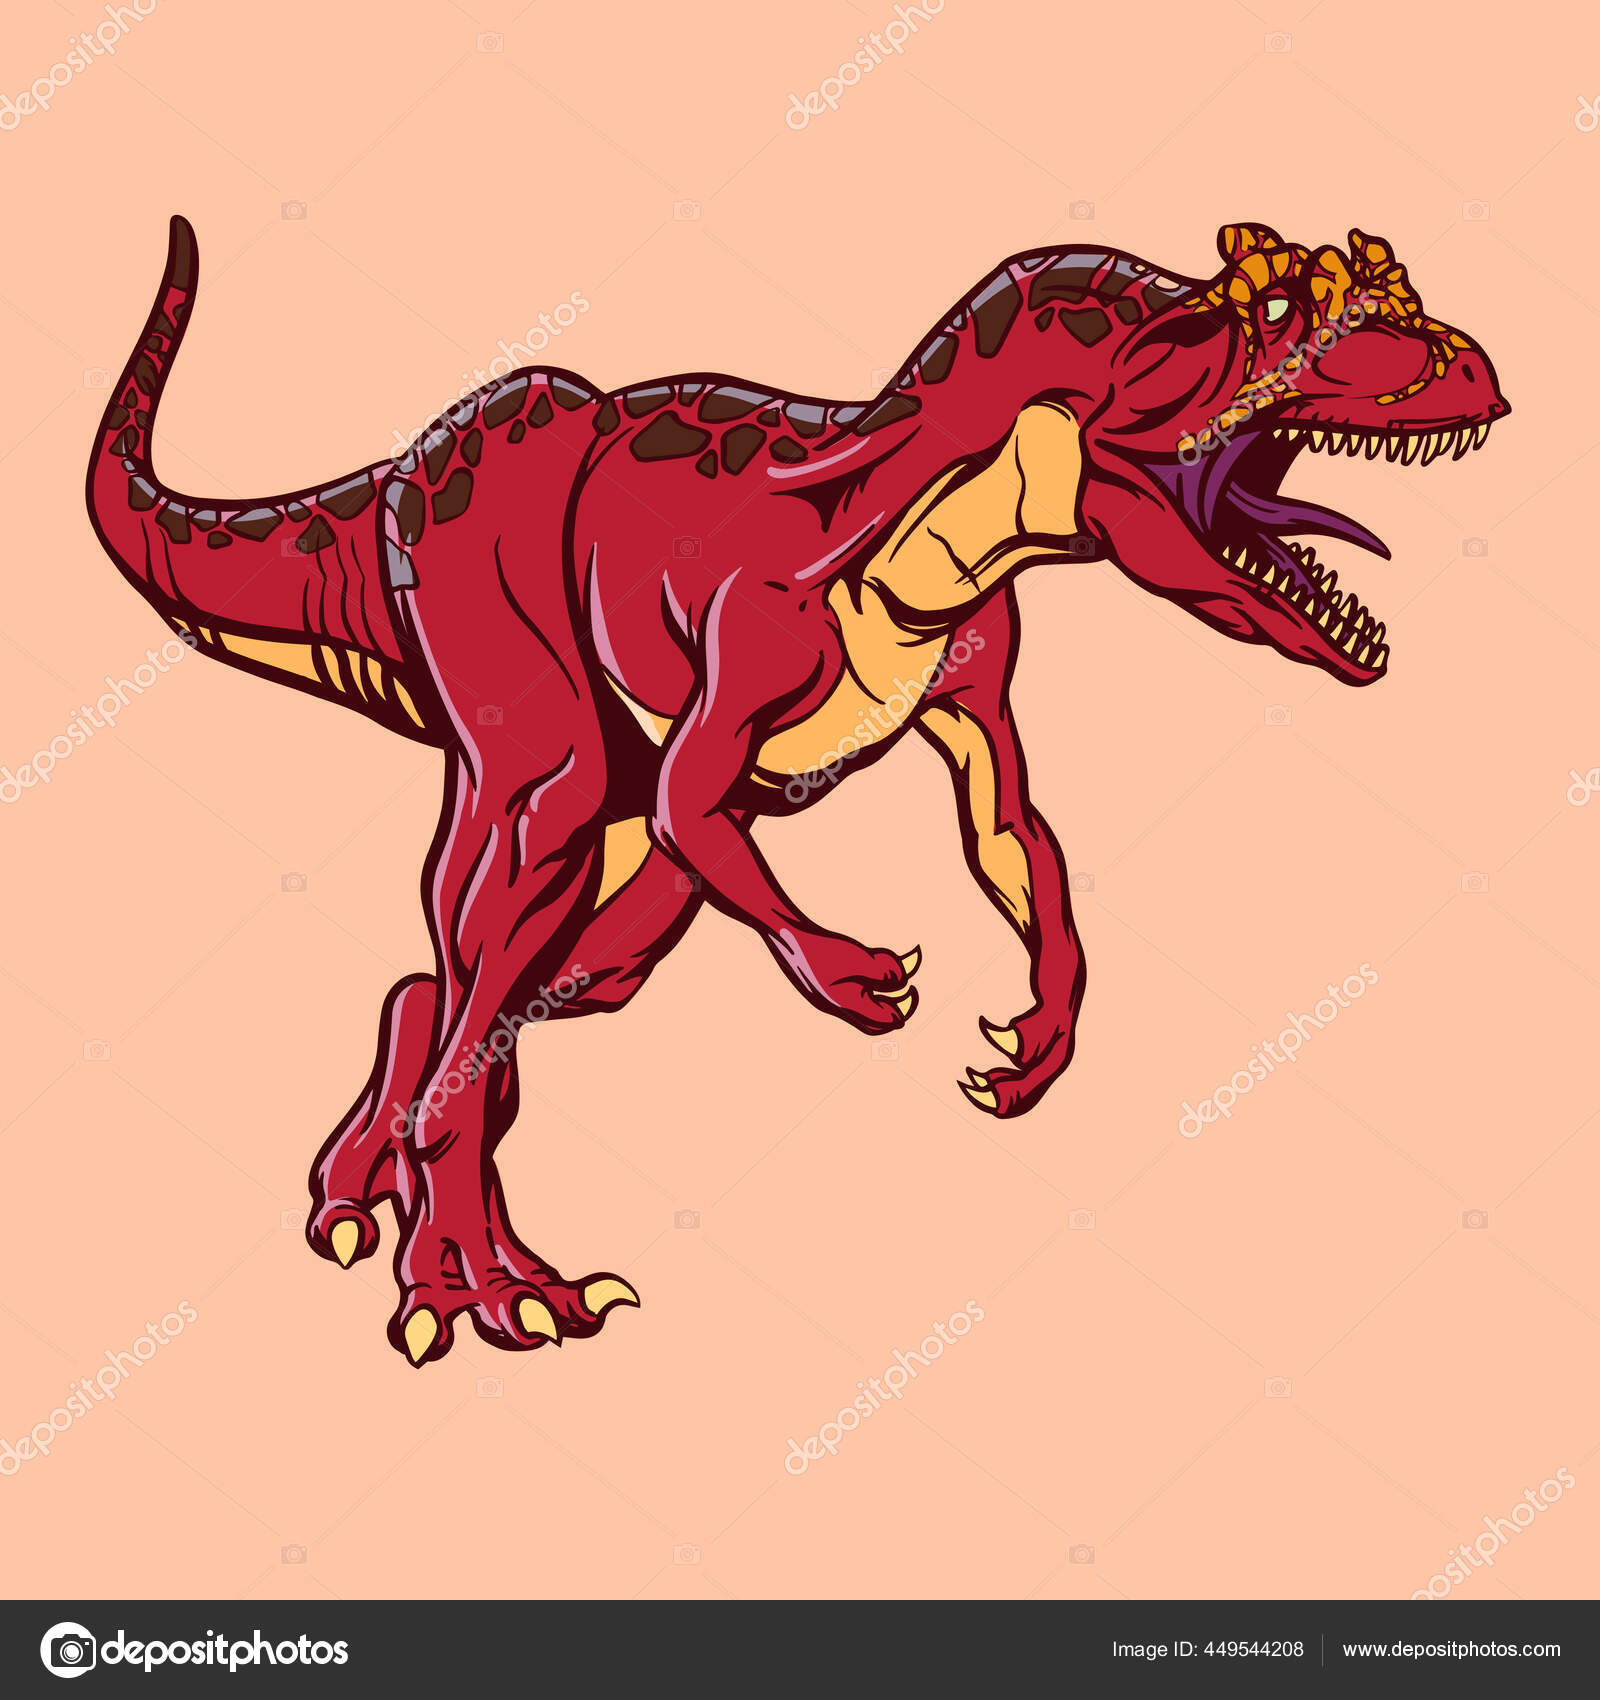 Página Do Livro De Cores Do Contorno Do Dinossauro T Rex